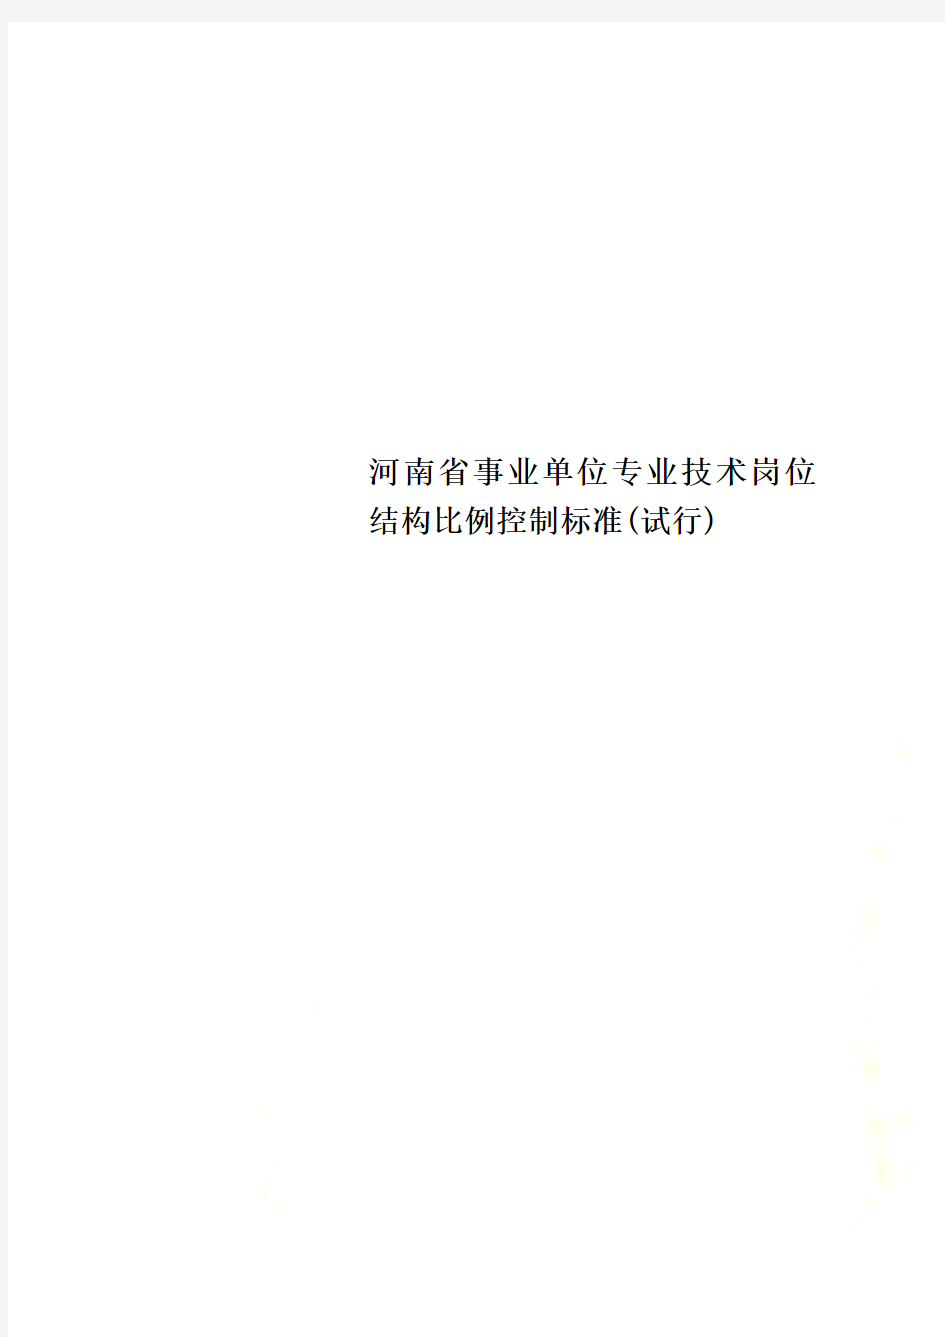 河南省事业单位专业技术岗位结构比例控制标准(试行)